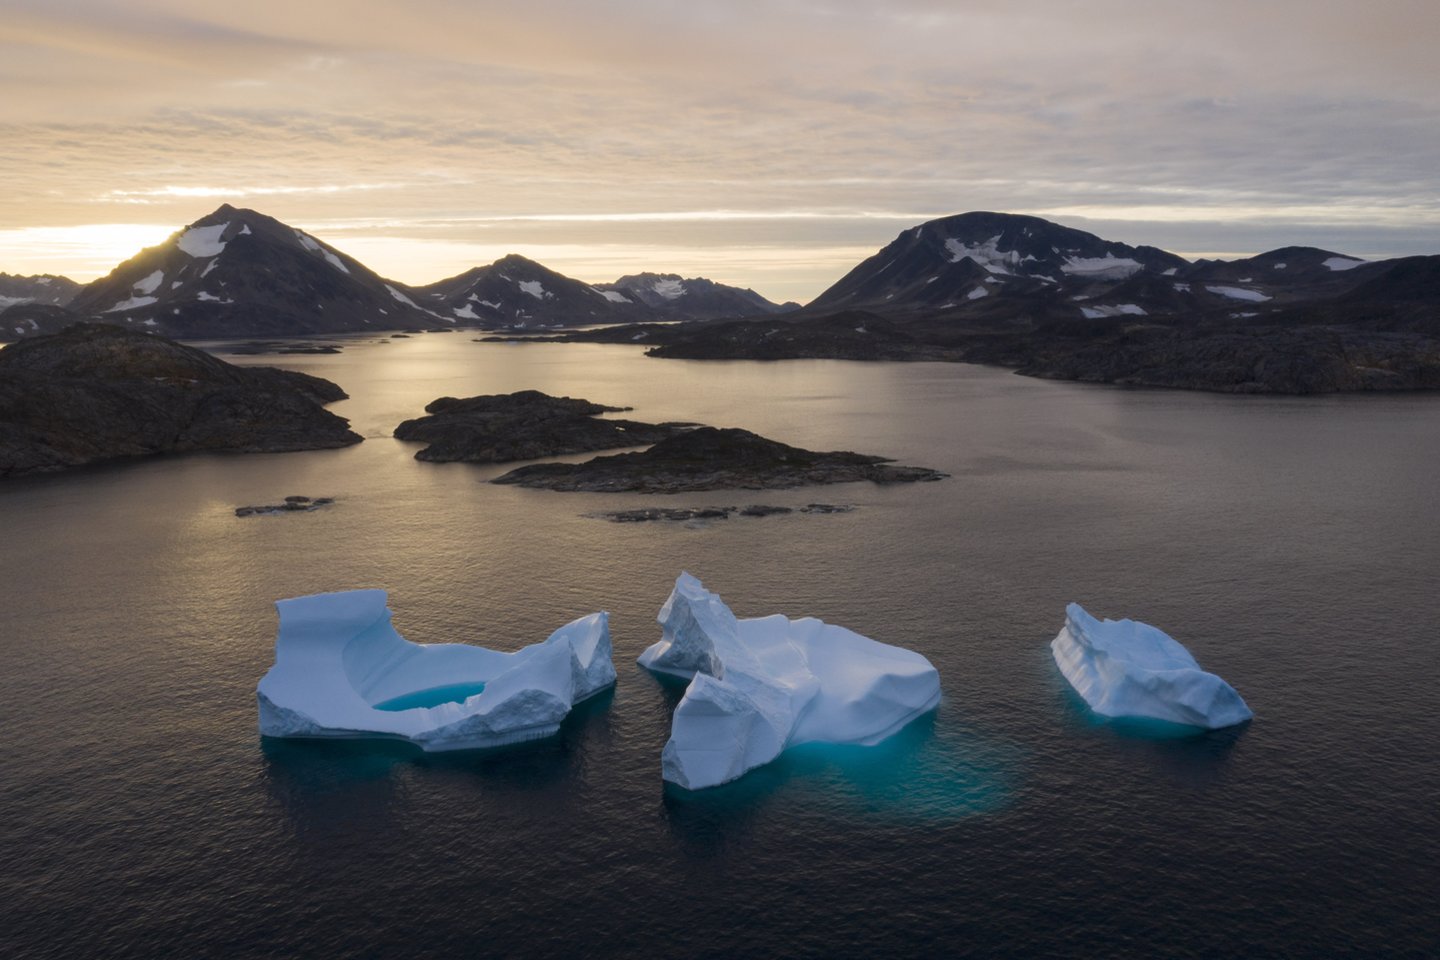   Karščių banga Sibire ir ankstyva ledo tirpsmo sezono pradžia Grenlandijoje yra nerimą keliantys reiškiniai, Arktyje artėjant vasarai, pranešė mokslininkai.<br> Scanpix/Reuters nuotr.